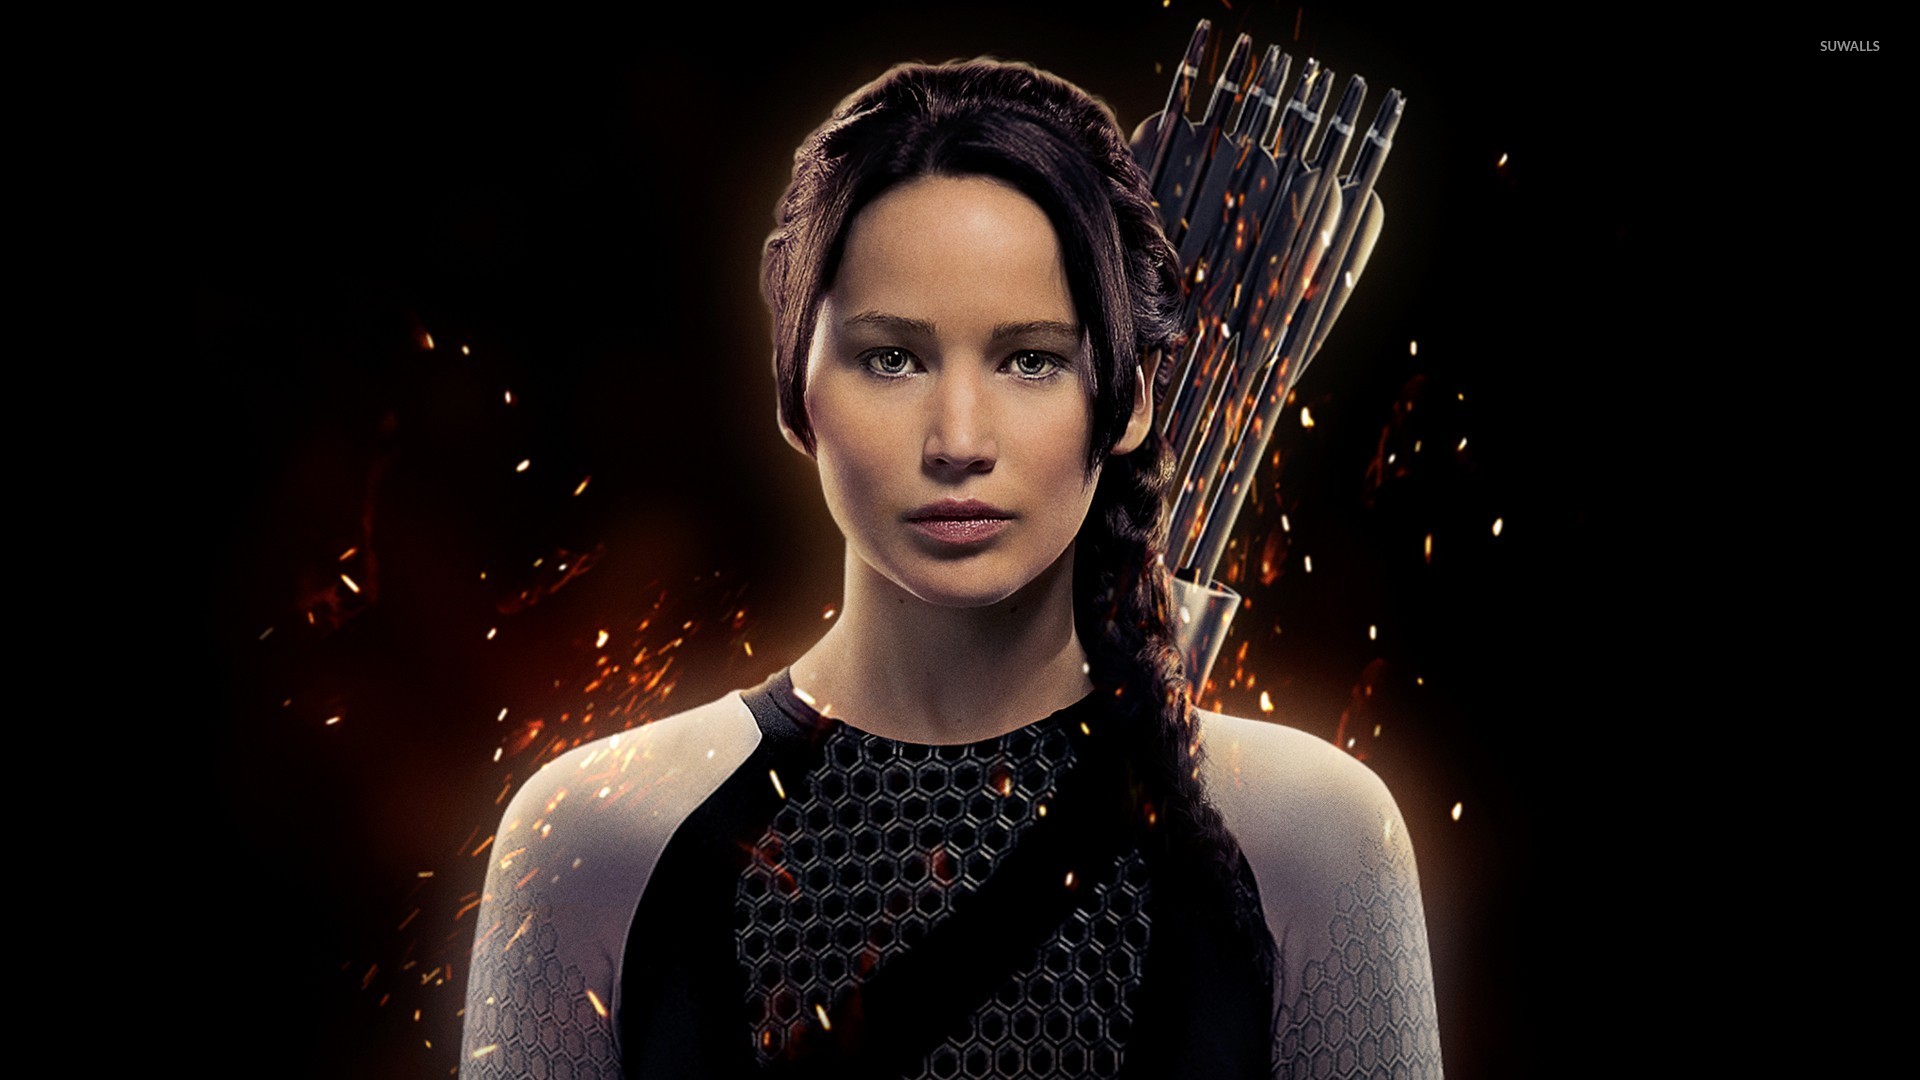 Jennifer Lawrence as Katniss Everdeen. | Hunger games 